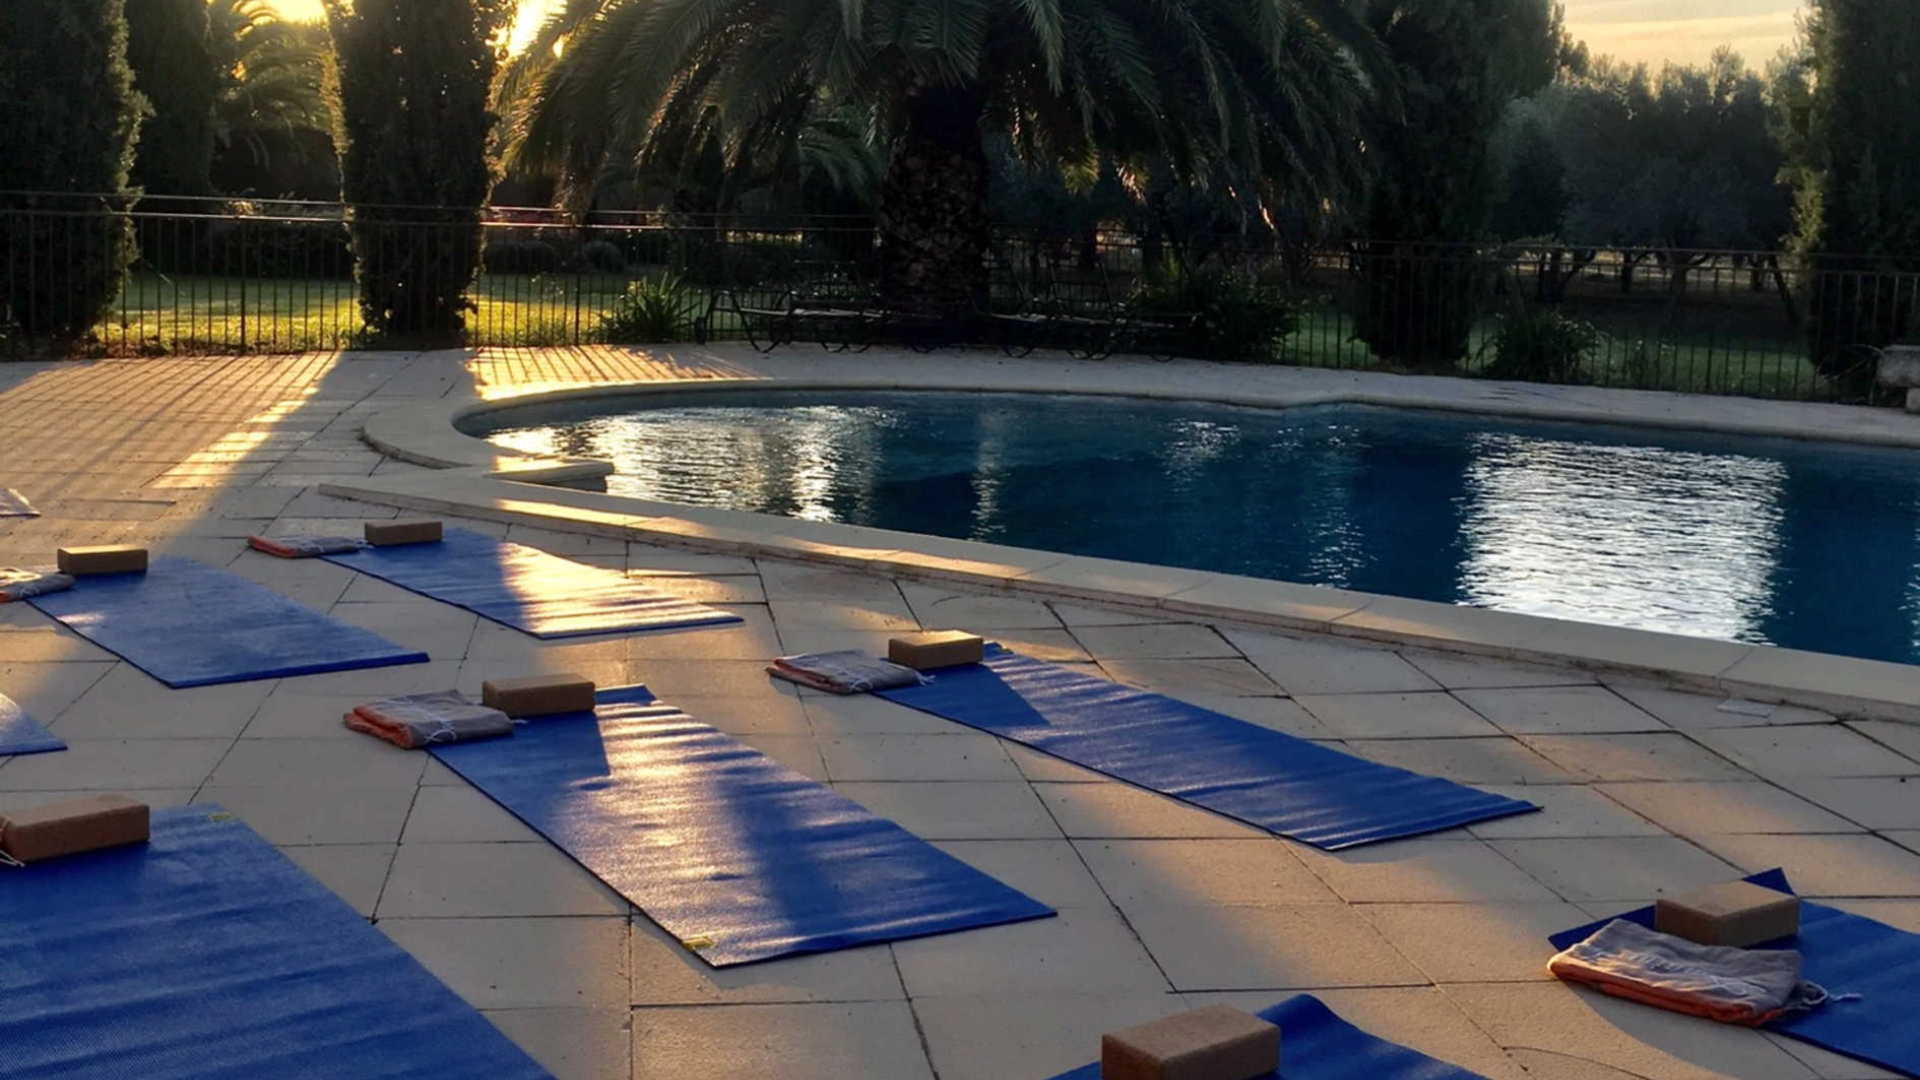 Séance de Yoga près de la piscine - Hotel Beaucaire - Domaine des Clos